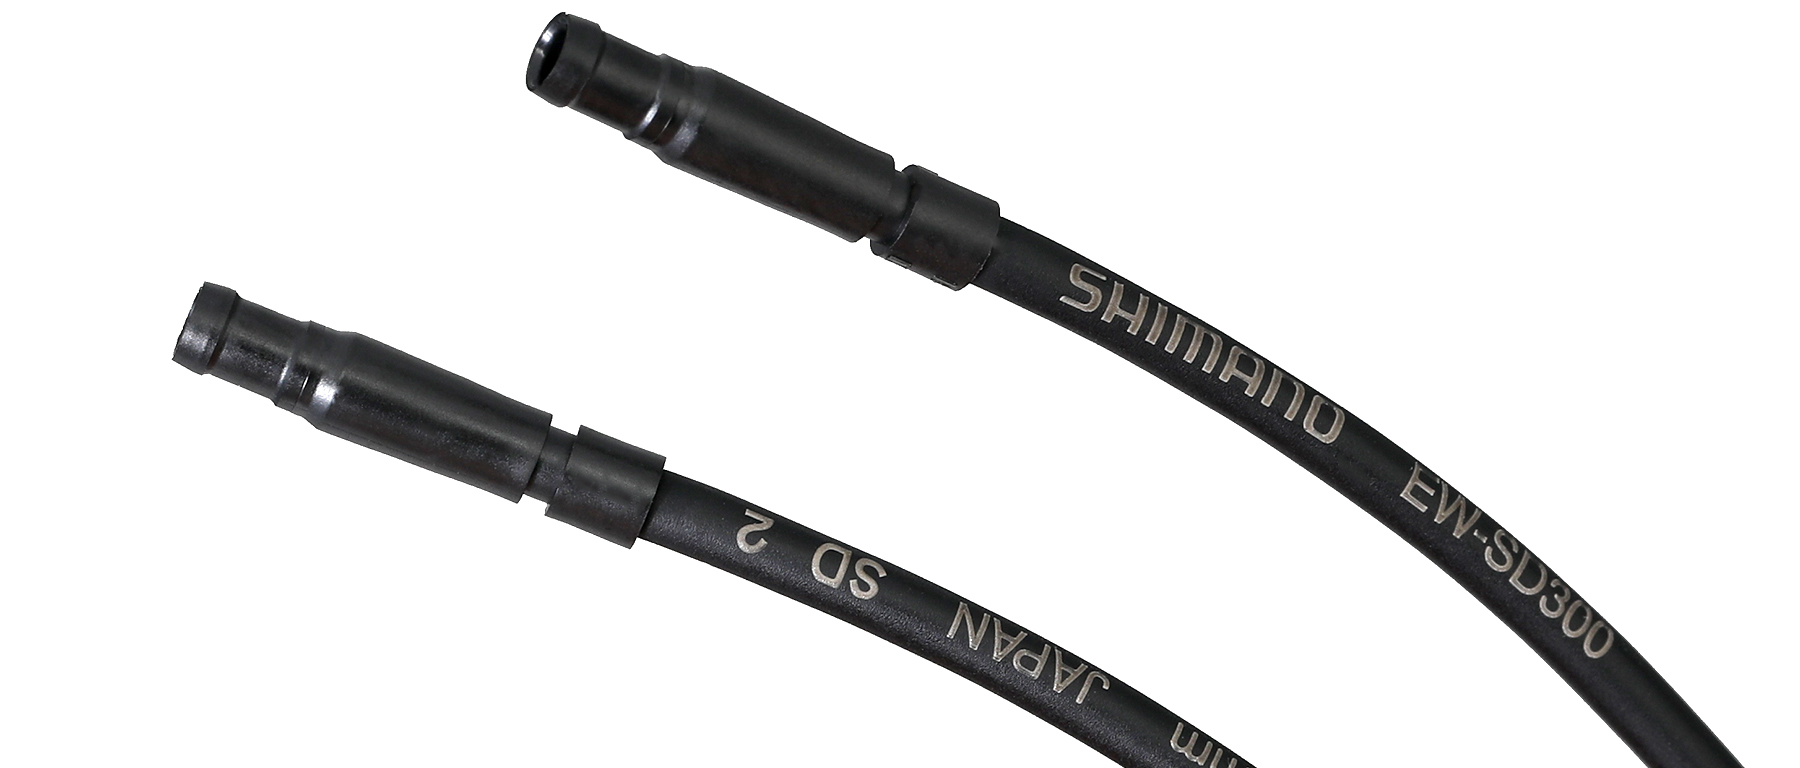 Shimano Di2 EW-SD300 Wire